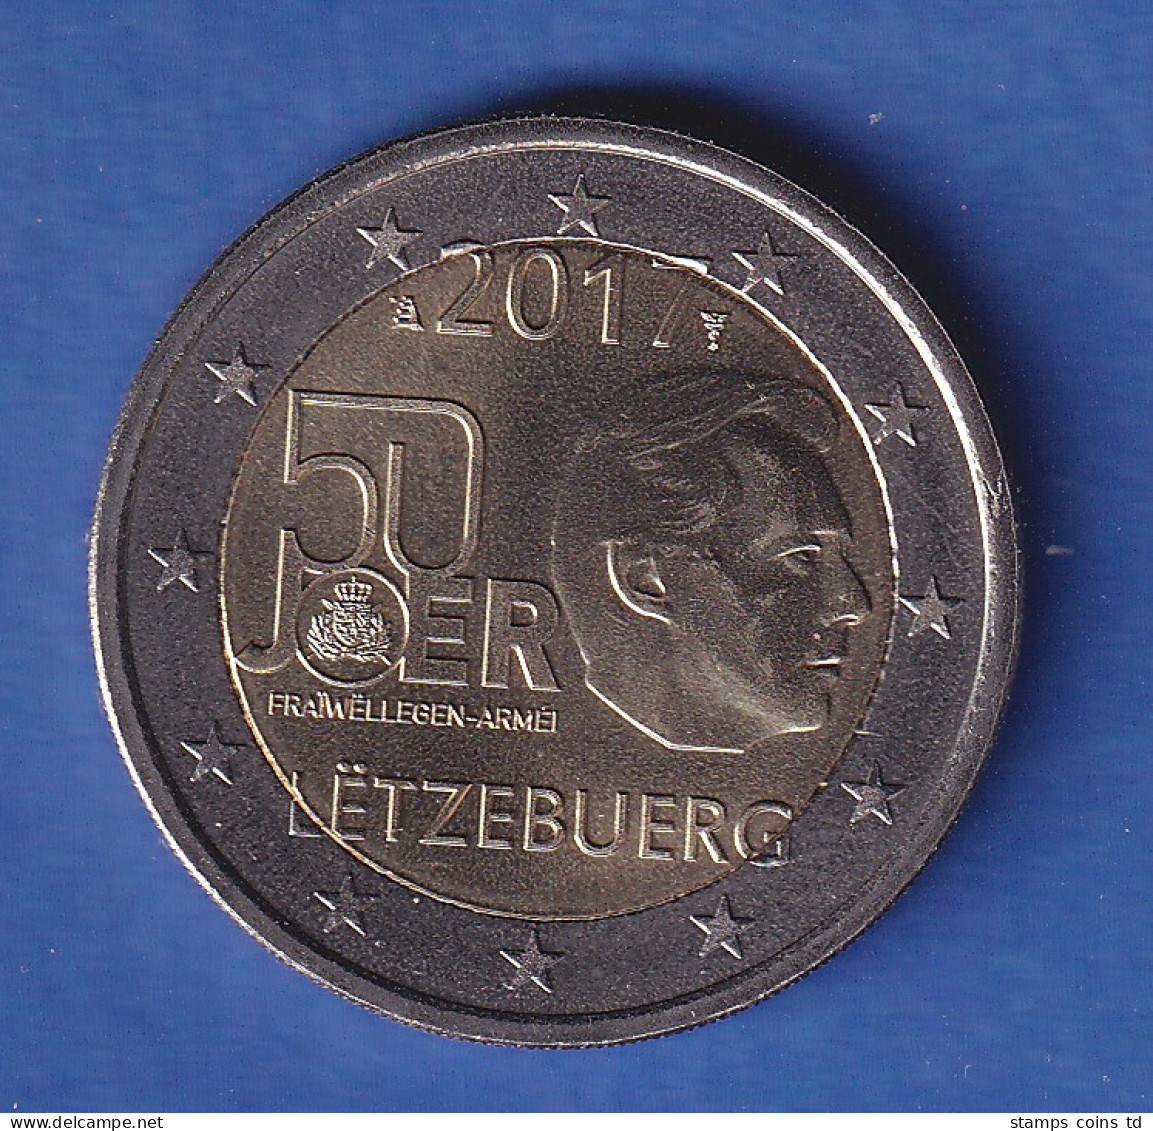 Luxemburg 2017 2-Euro-Sondermünze Wehrdienst Bankfr. Unzirk. - Luxemburgo